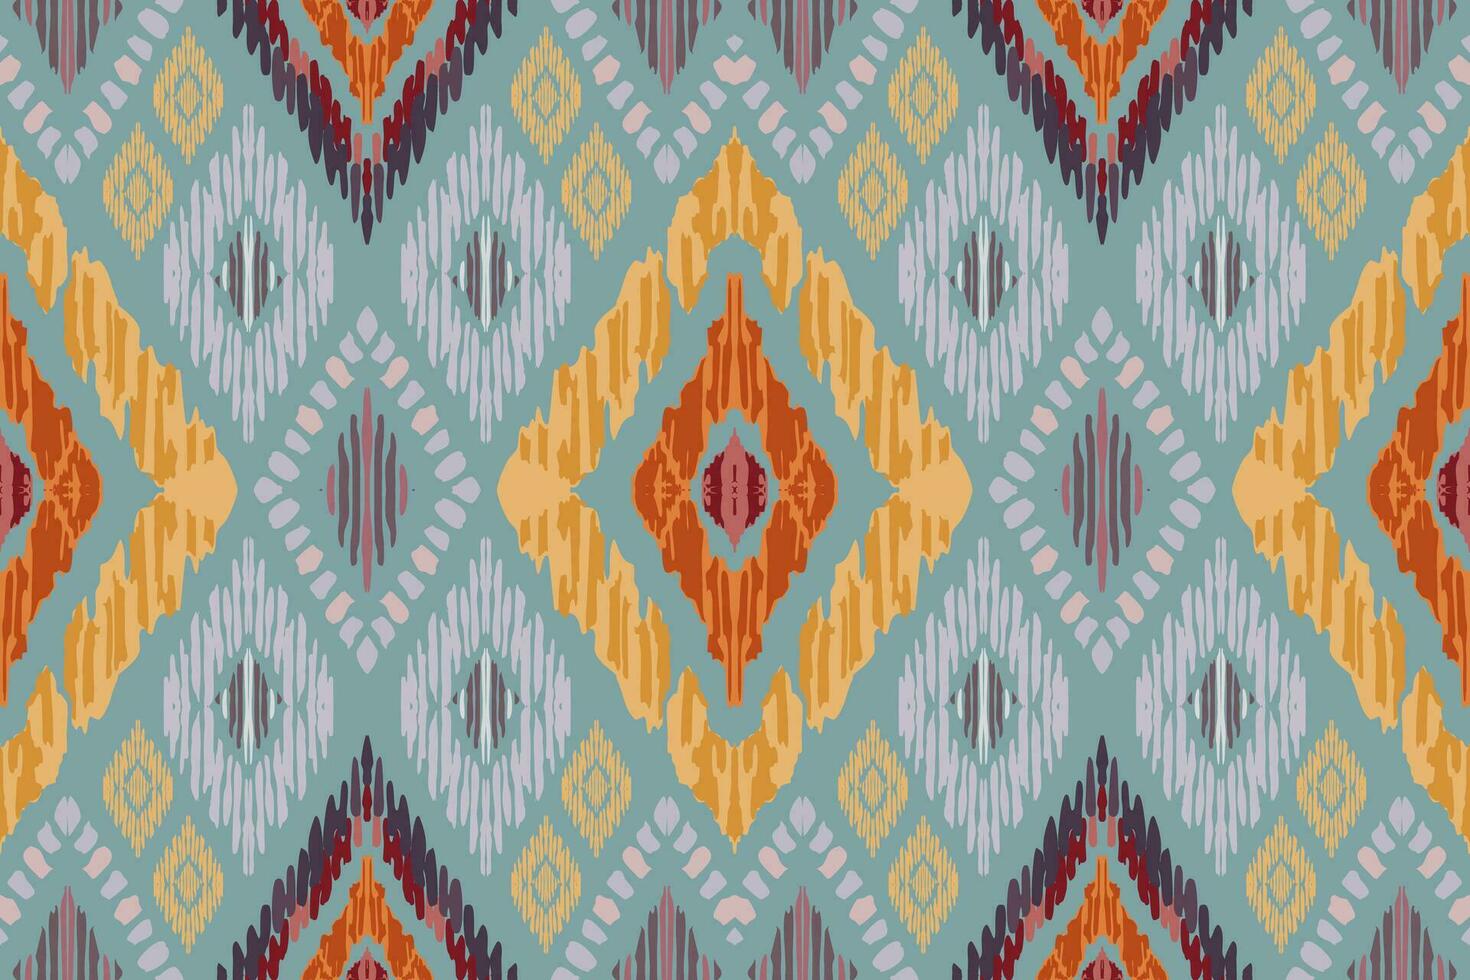 ikat paisley broderi på grå bakgrund.geometrisk etnisk orientalisk sömlös mönster traditionell.aztec stil abstrakt vektor illustration.design för textur, tyg, kläder, inslagning, matta, tryck.